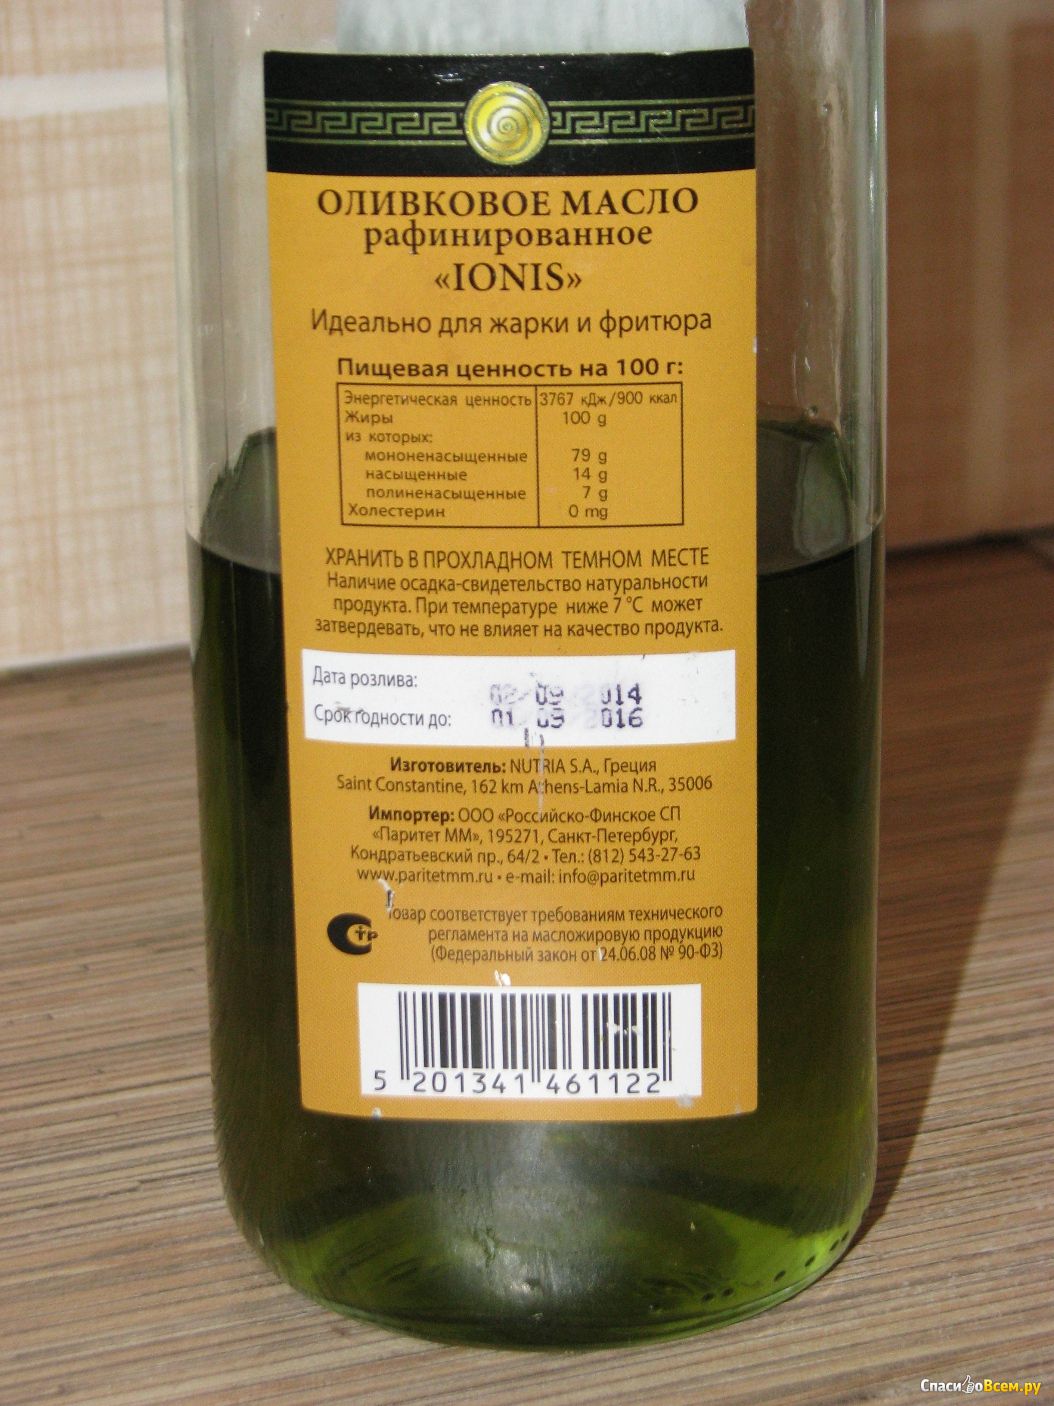 Рафинированное оливковое масло для салата. Оливковое масло этикетка. Масло оливковое рафинированное. Рафинированное оливковое масло для жарки. Ionis оливковое масло.